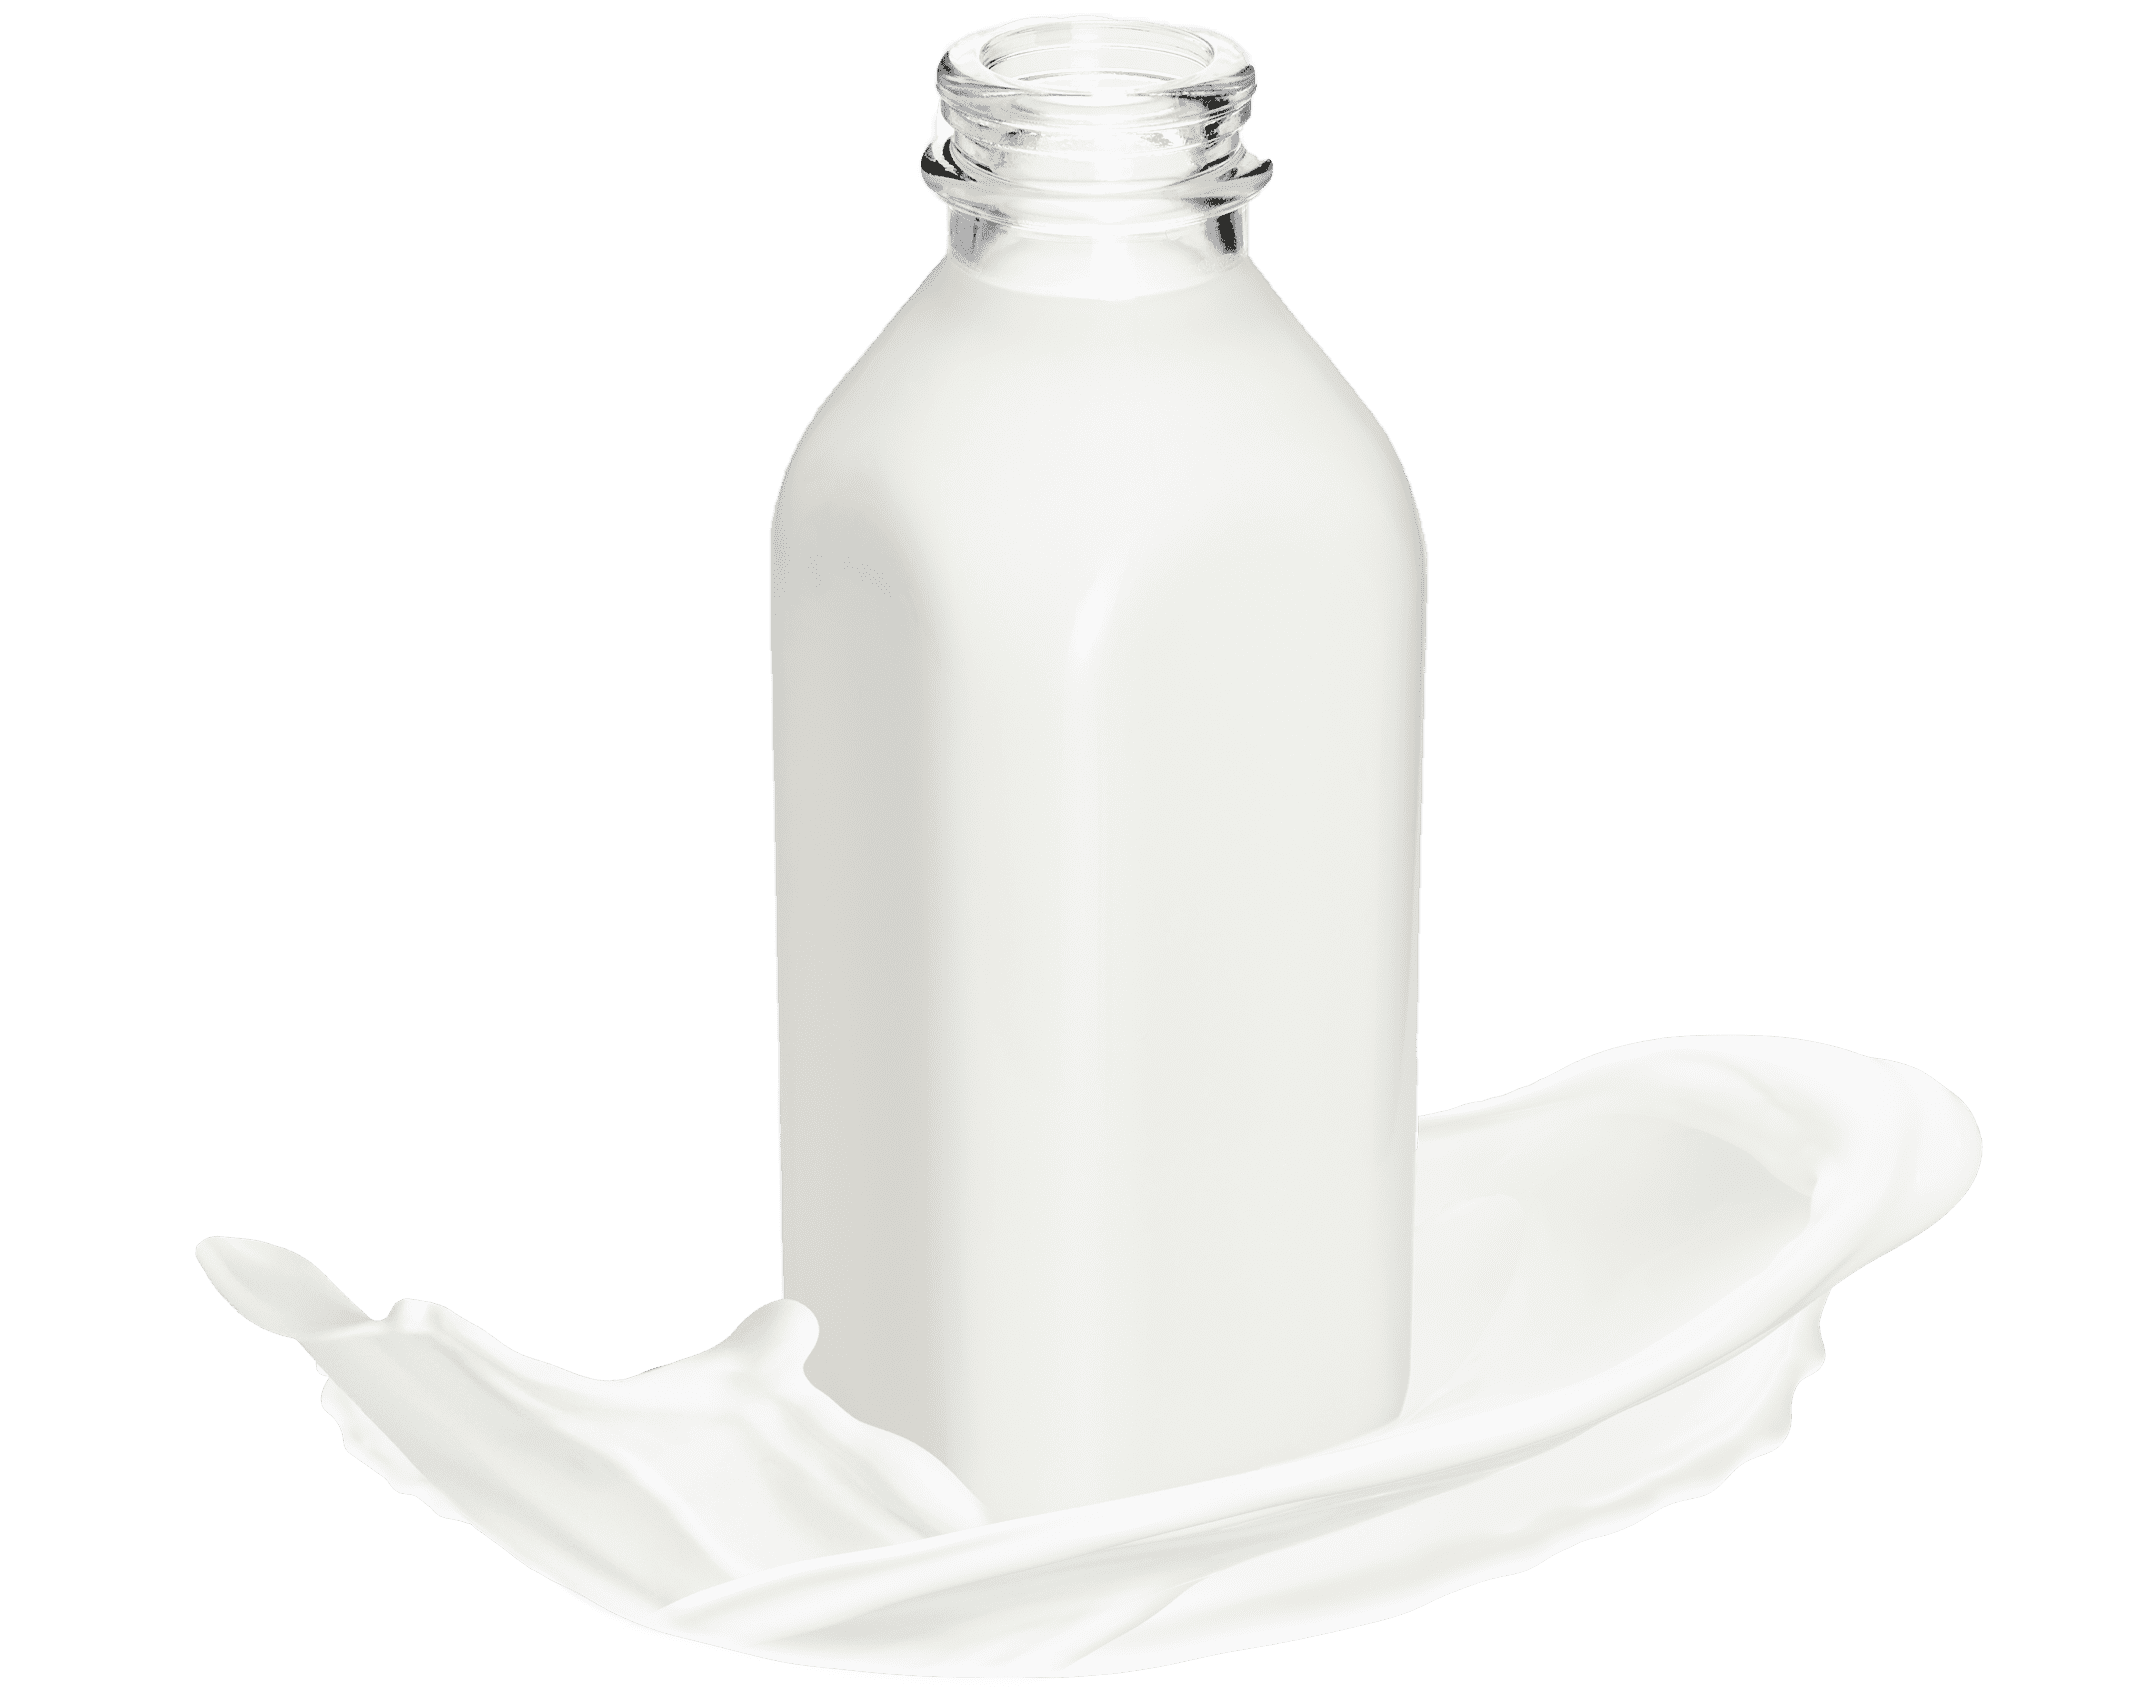 Bottle of homogenized milk